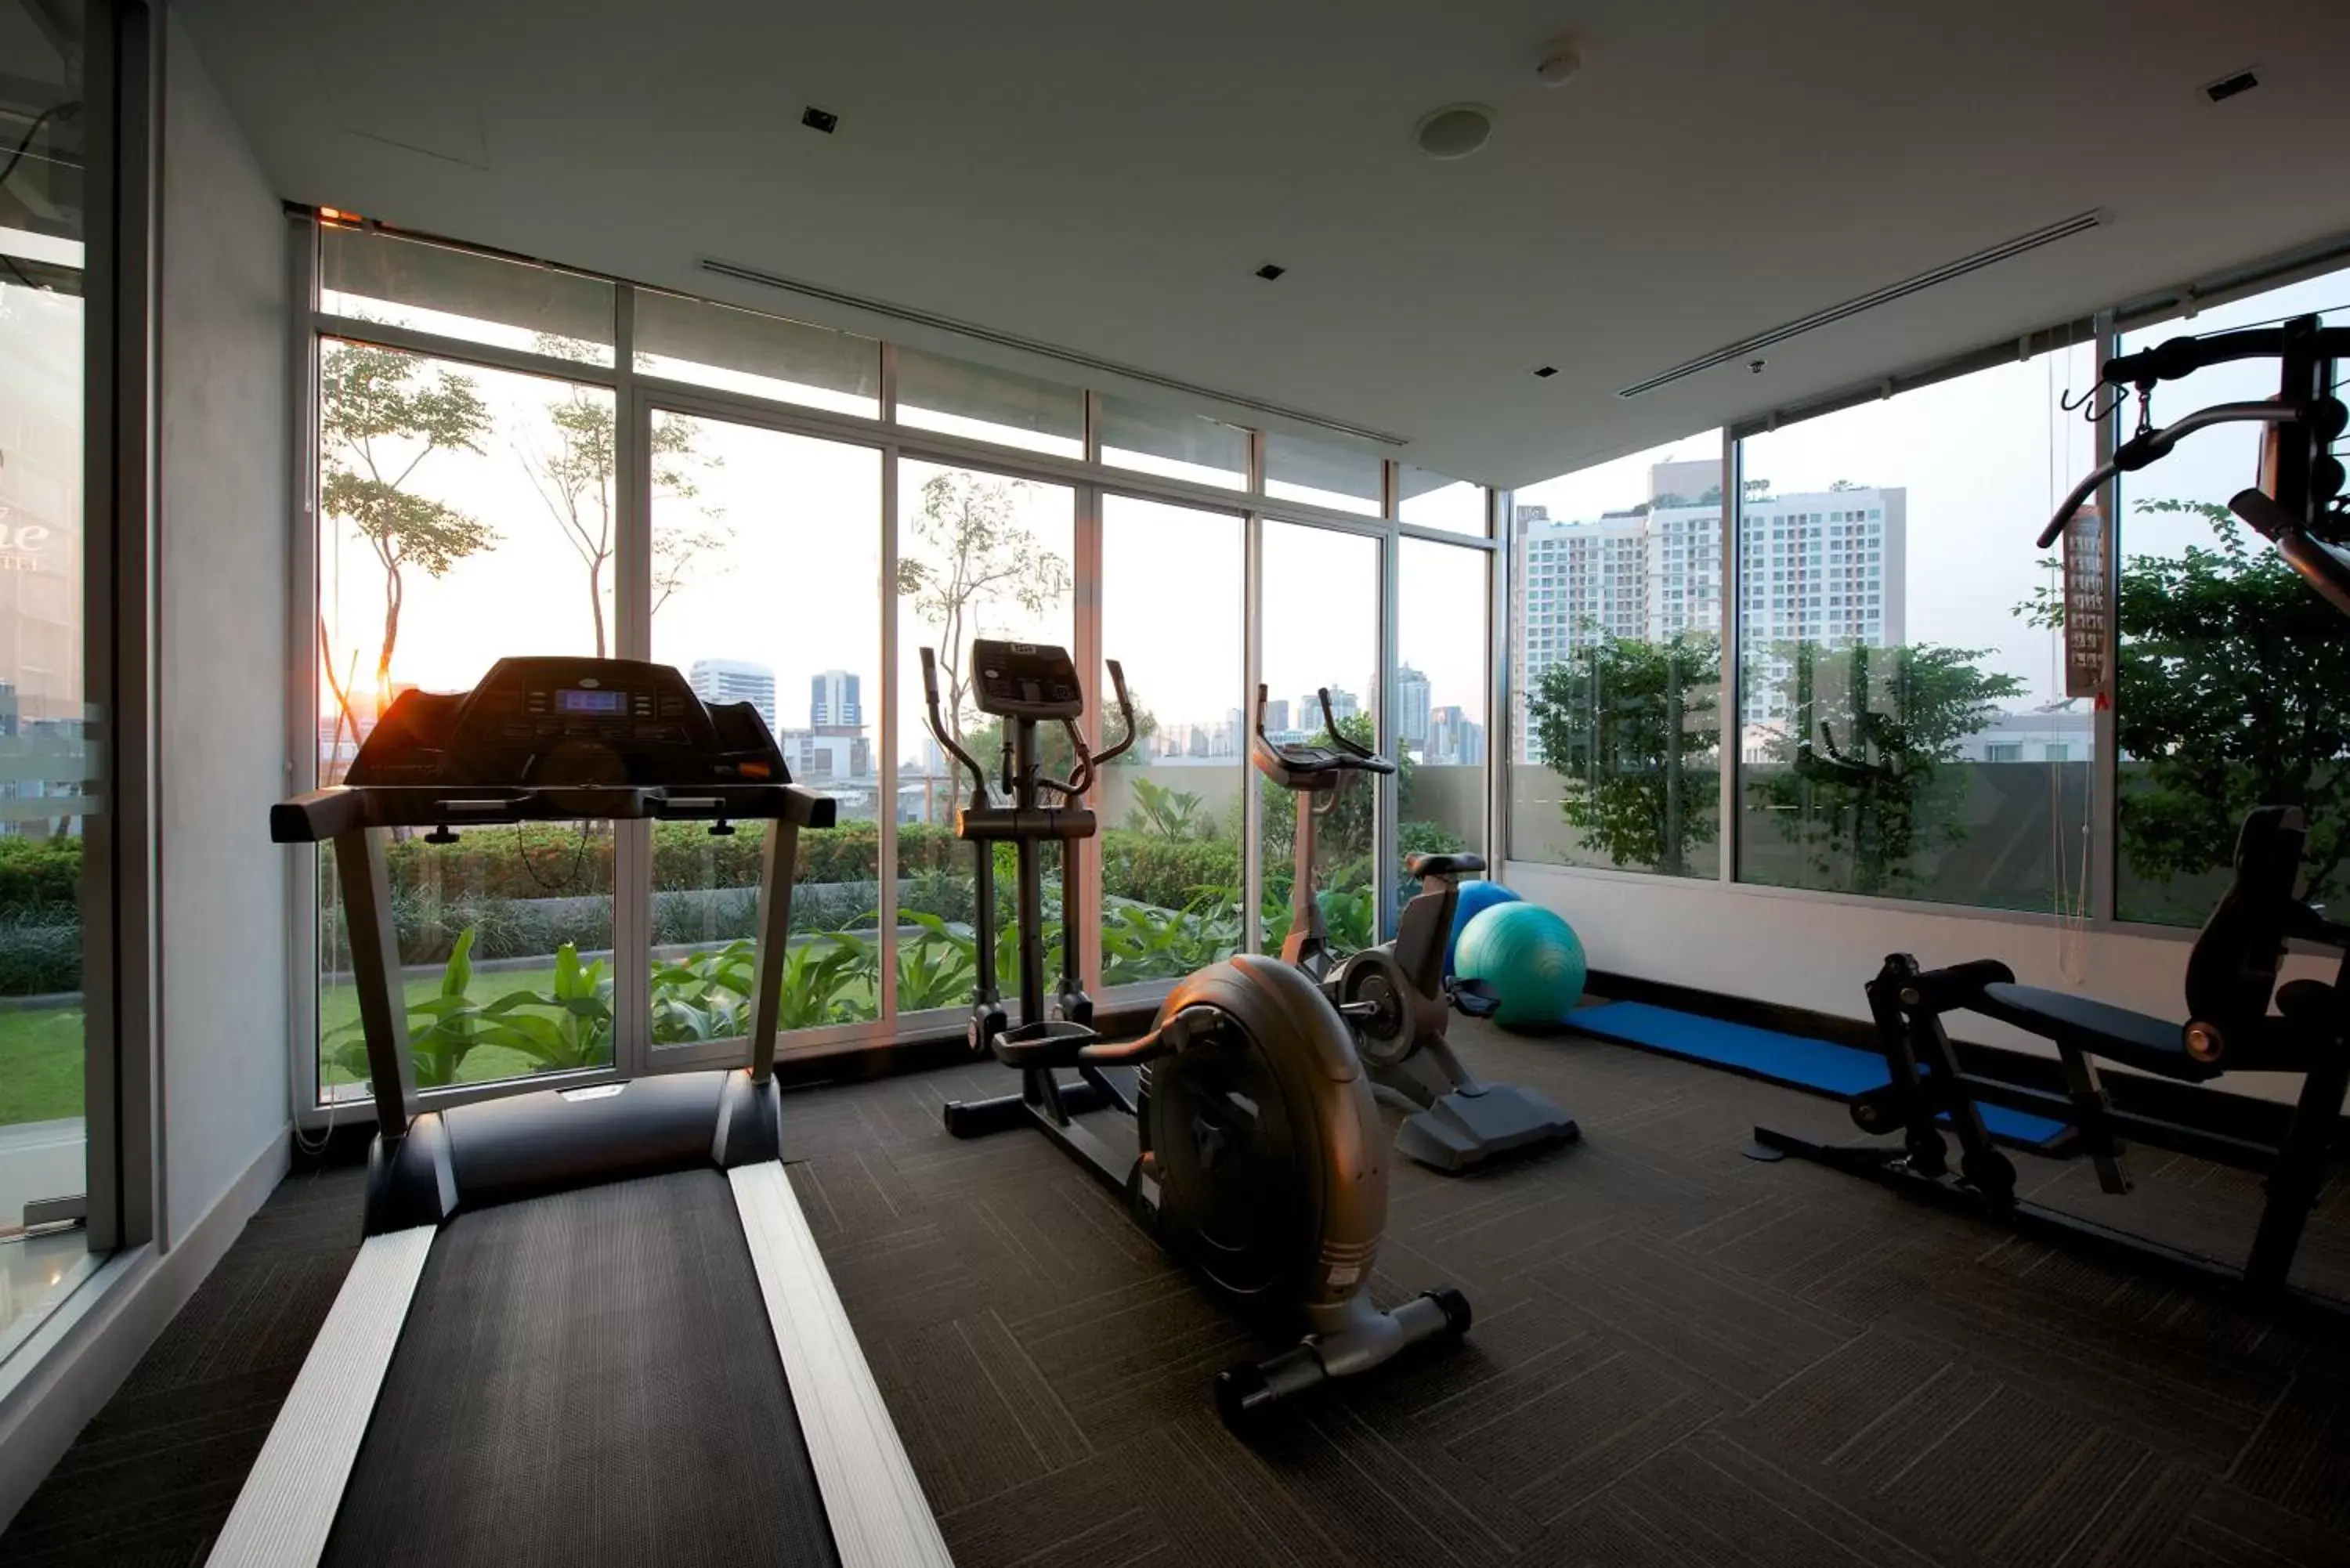 Fitness centre/facilities, Fitness Center/Facilities in Jasmine Resort Bangkok